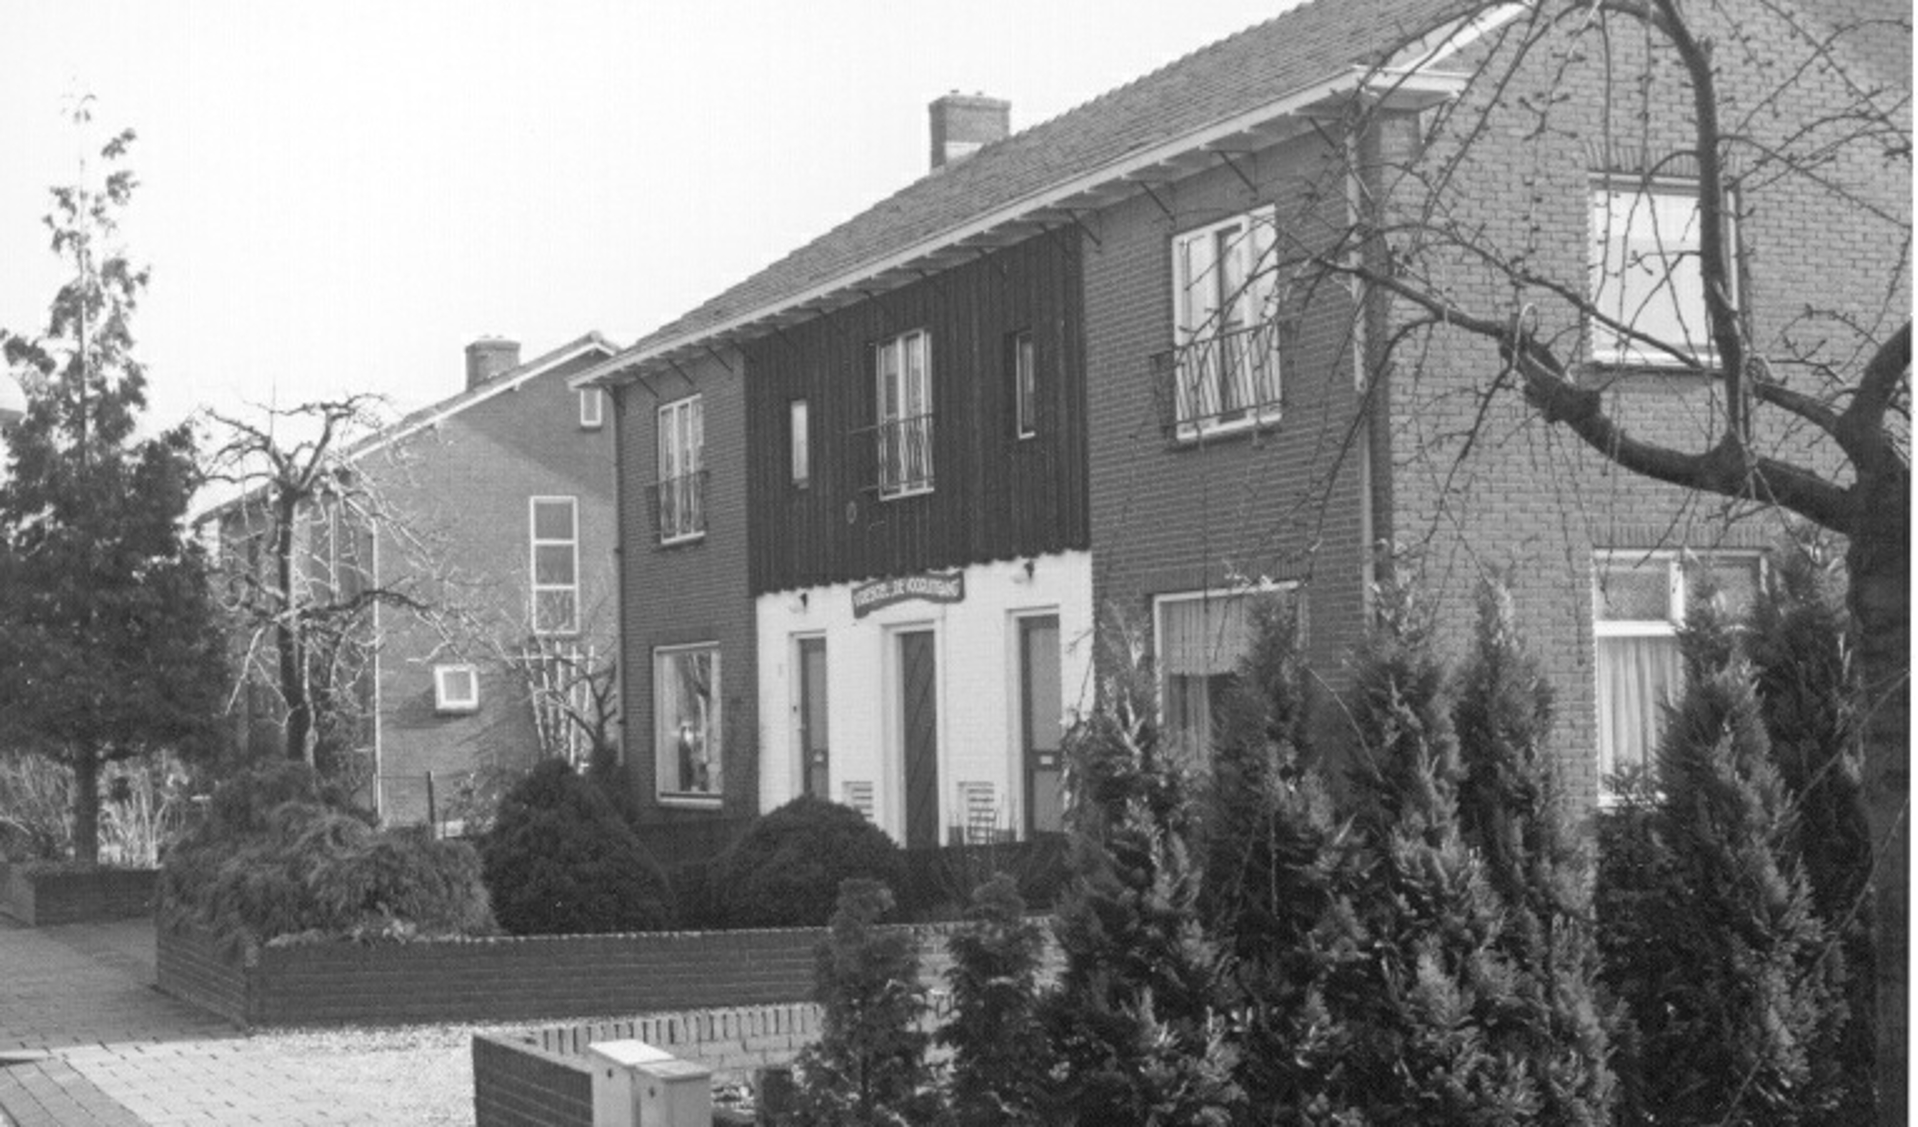 Tussen de woningen van Pelikaanweg 5 en 7 was de vriescel, te herkennen aan de witte pui met houtwerk op de verdieping